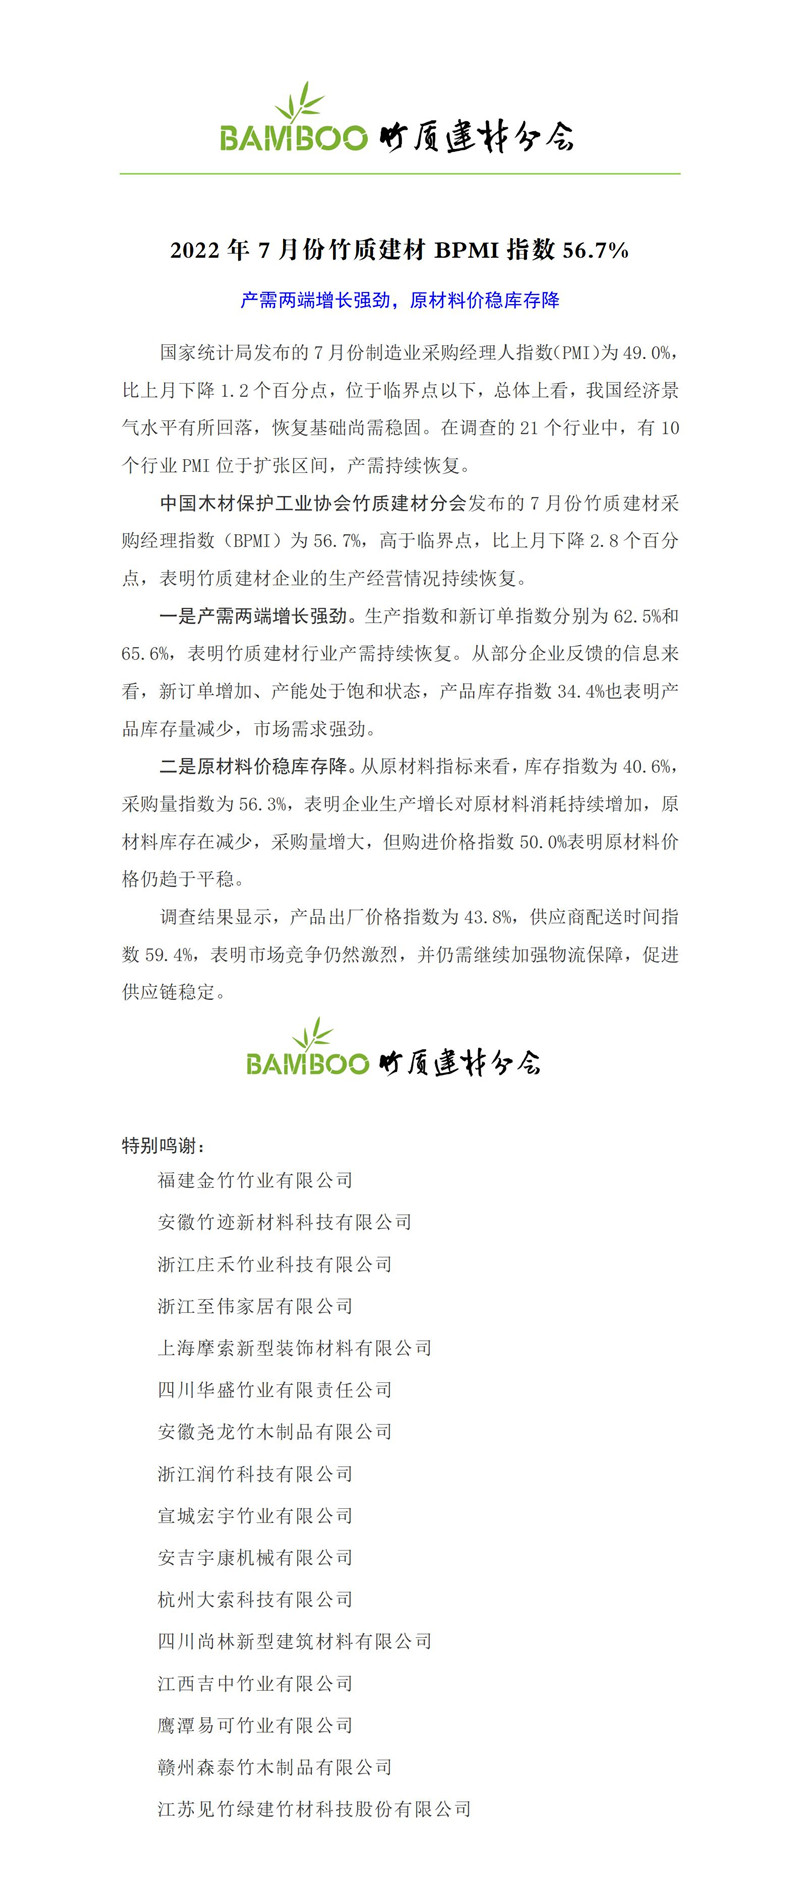 2022年7月竹材行业采购经理人指数-发布_01.jpg